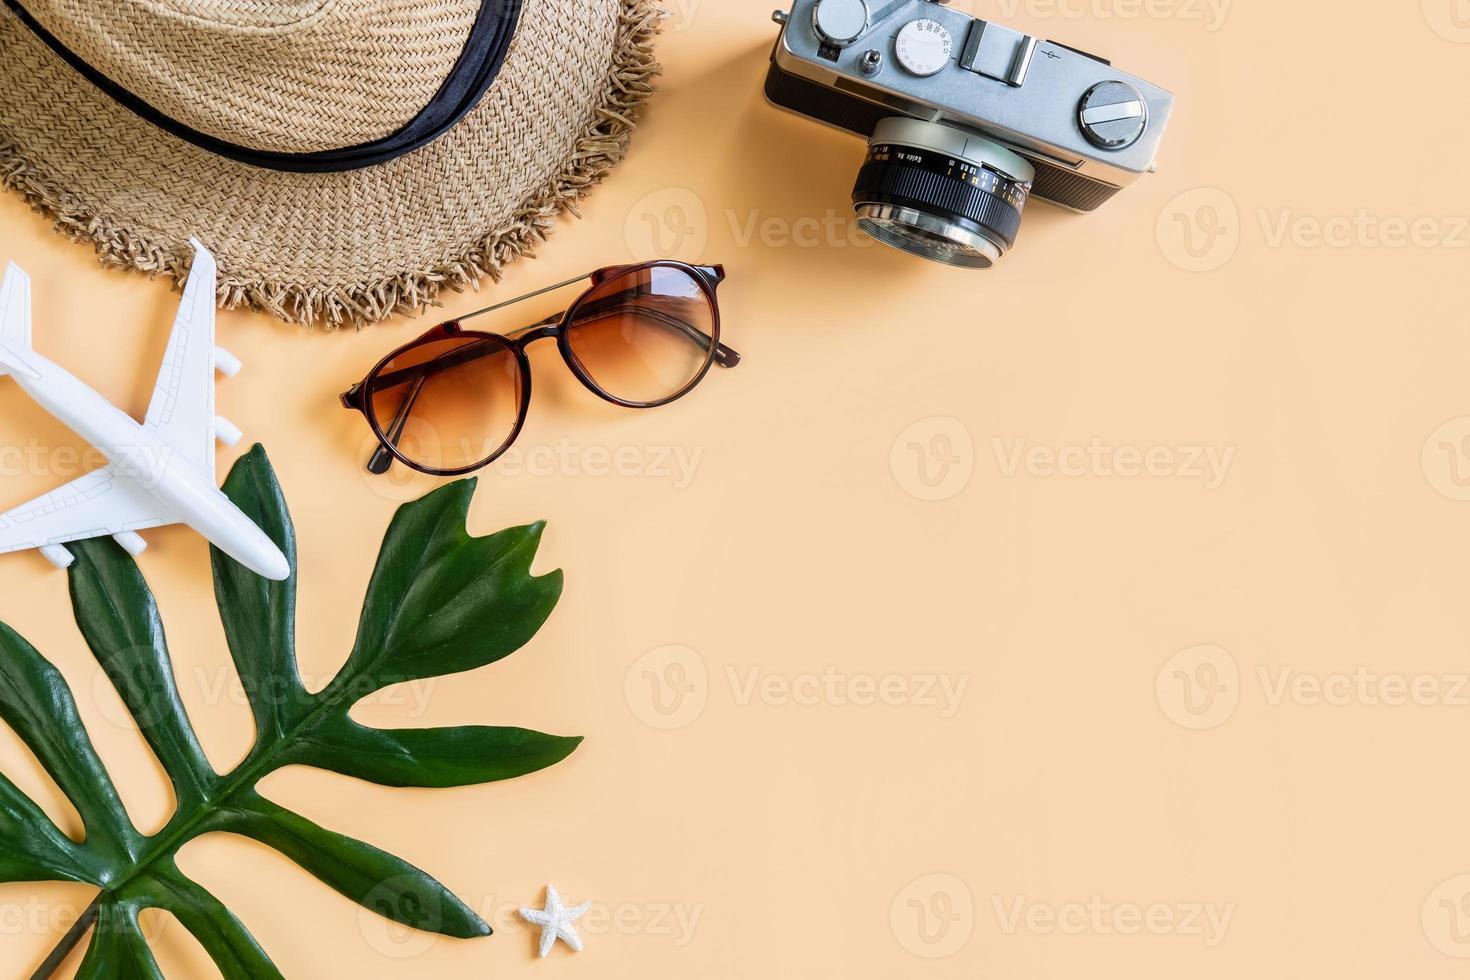 reisezubehörartikel mit farbigem hintergrund, sommerferienkonzept foto